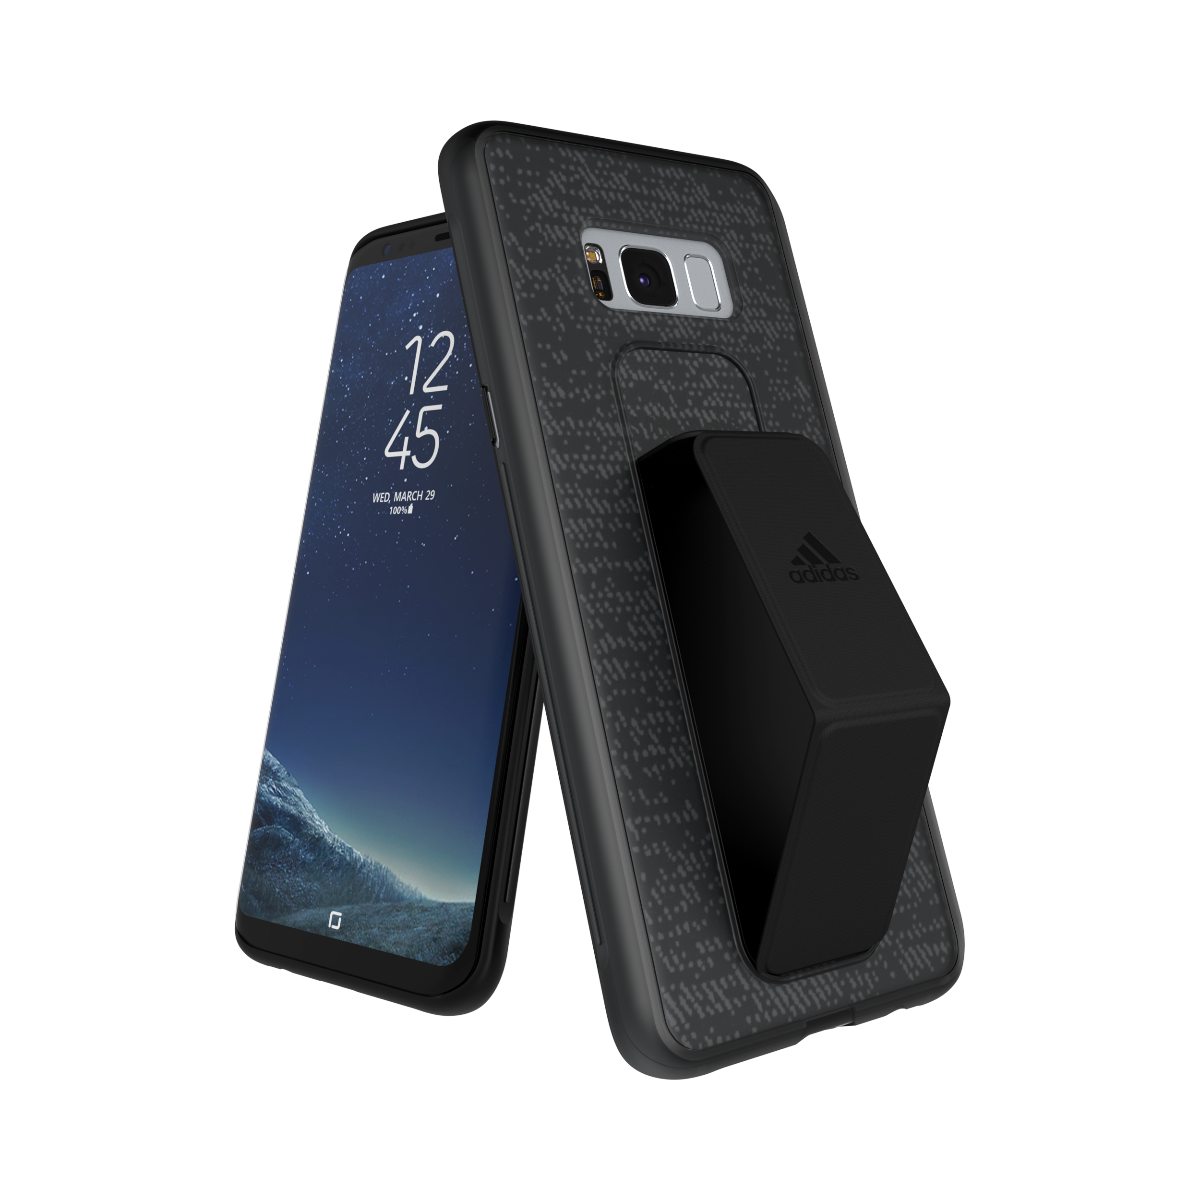 Cortar Calamidad Amigo Black Grip Case For Samsung Galaxy S8 Plus | adidas-cases